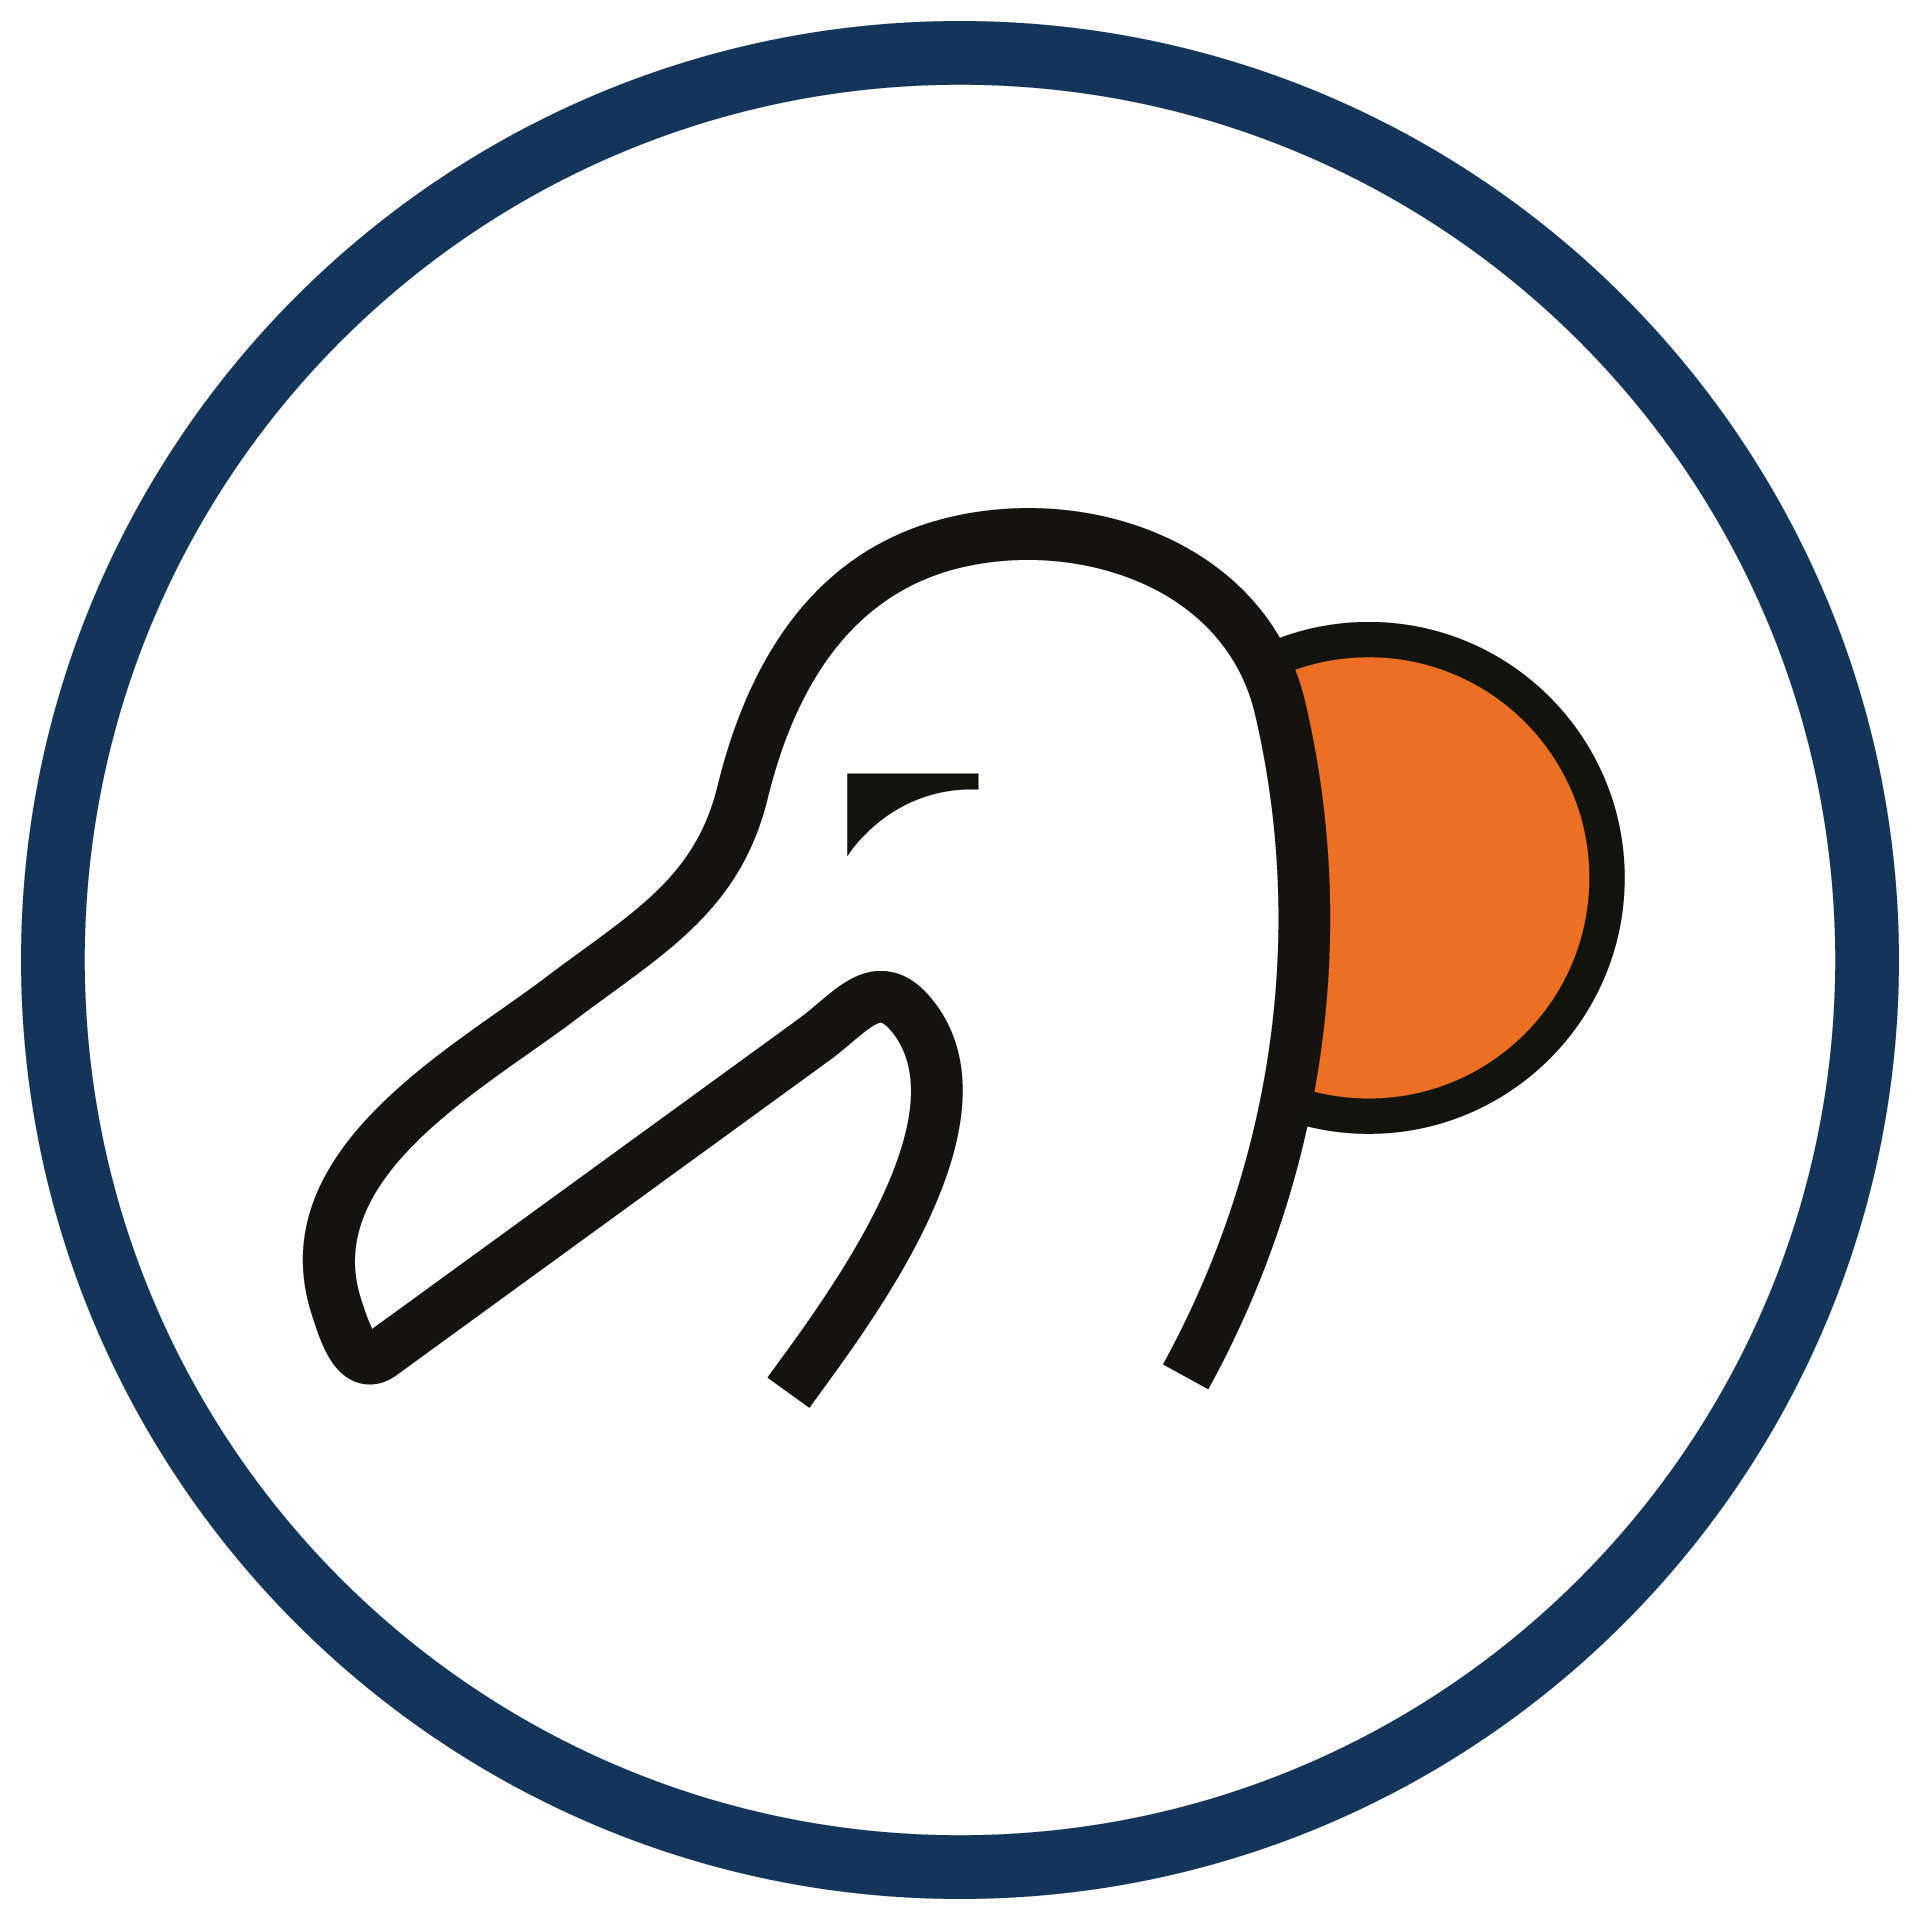 icona-logo-albatros-blu-nero-arancio